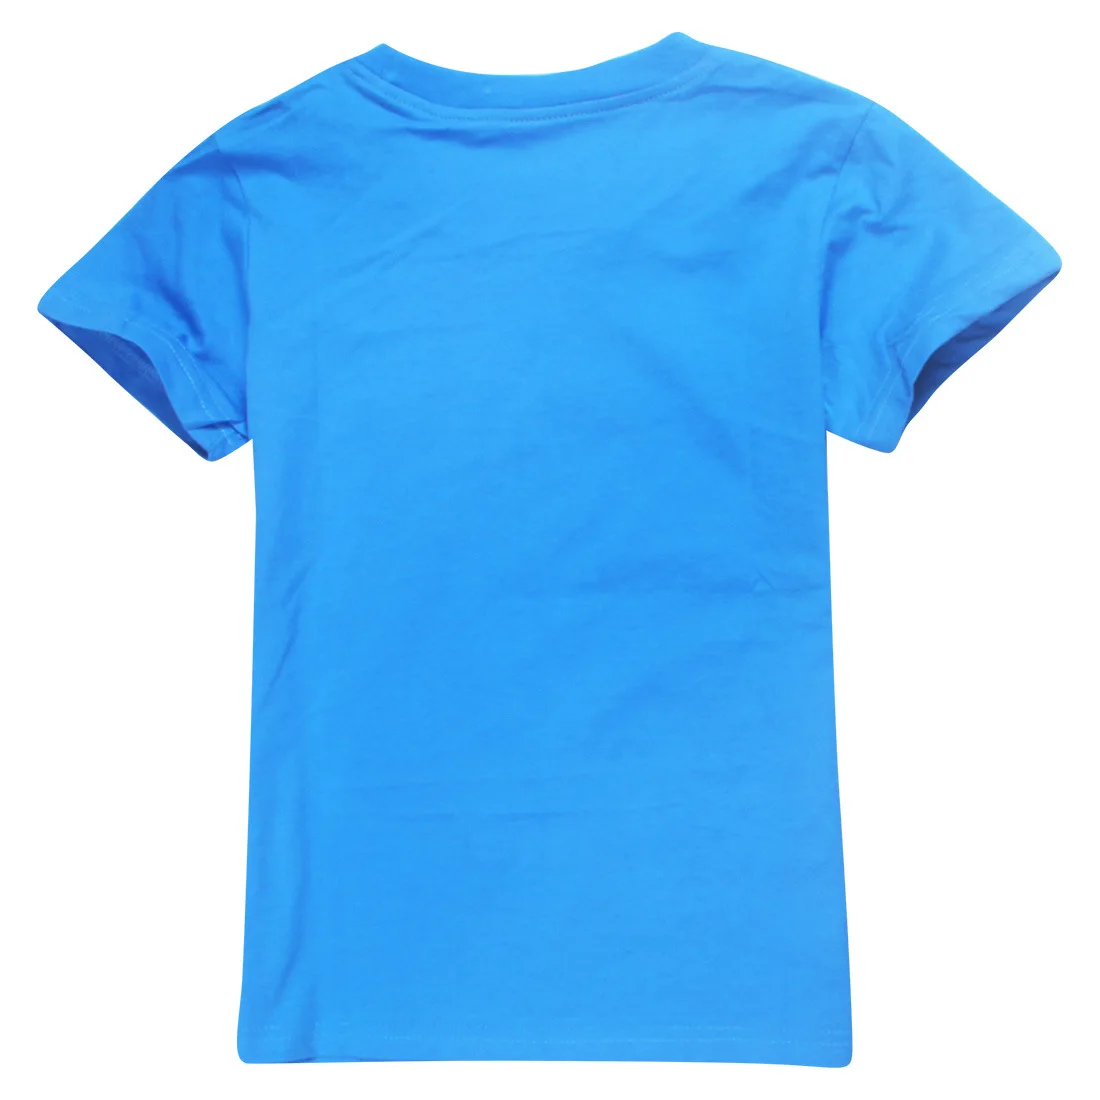 Игрушка из фильма «История 4» футболка Летняя футболка Топы с короткими рукавами, футболки для девочек и мальчиков 3-11 лет детская повседневная спортивная одежда